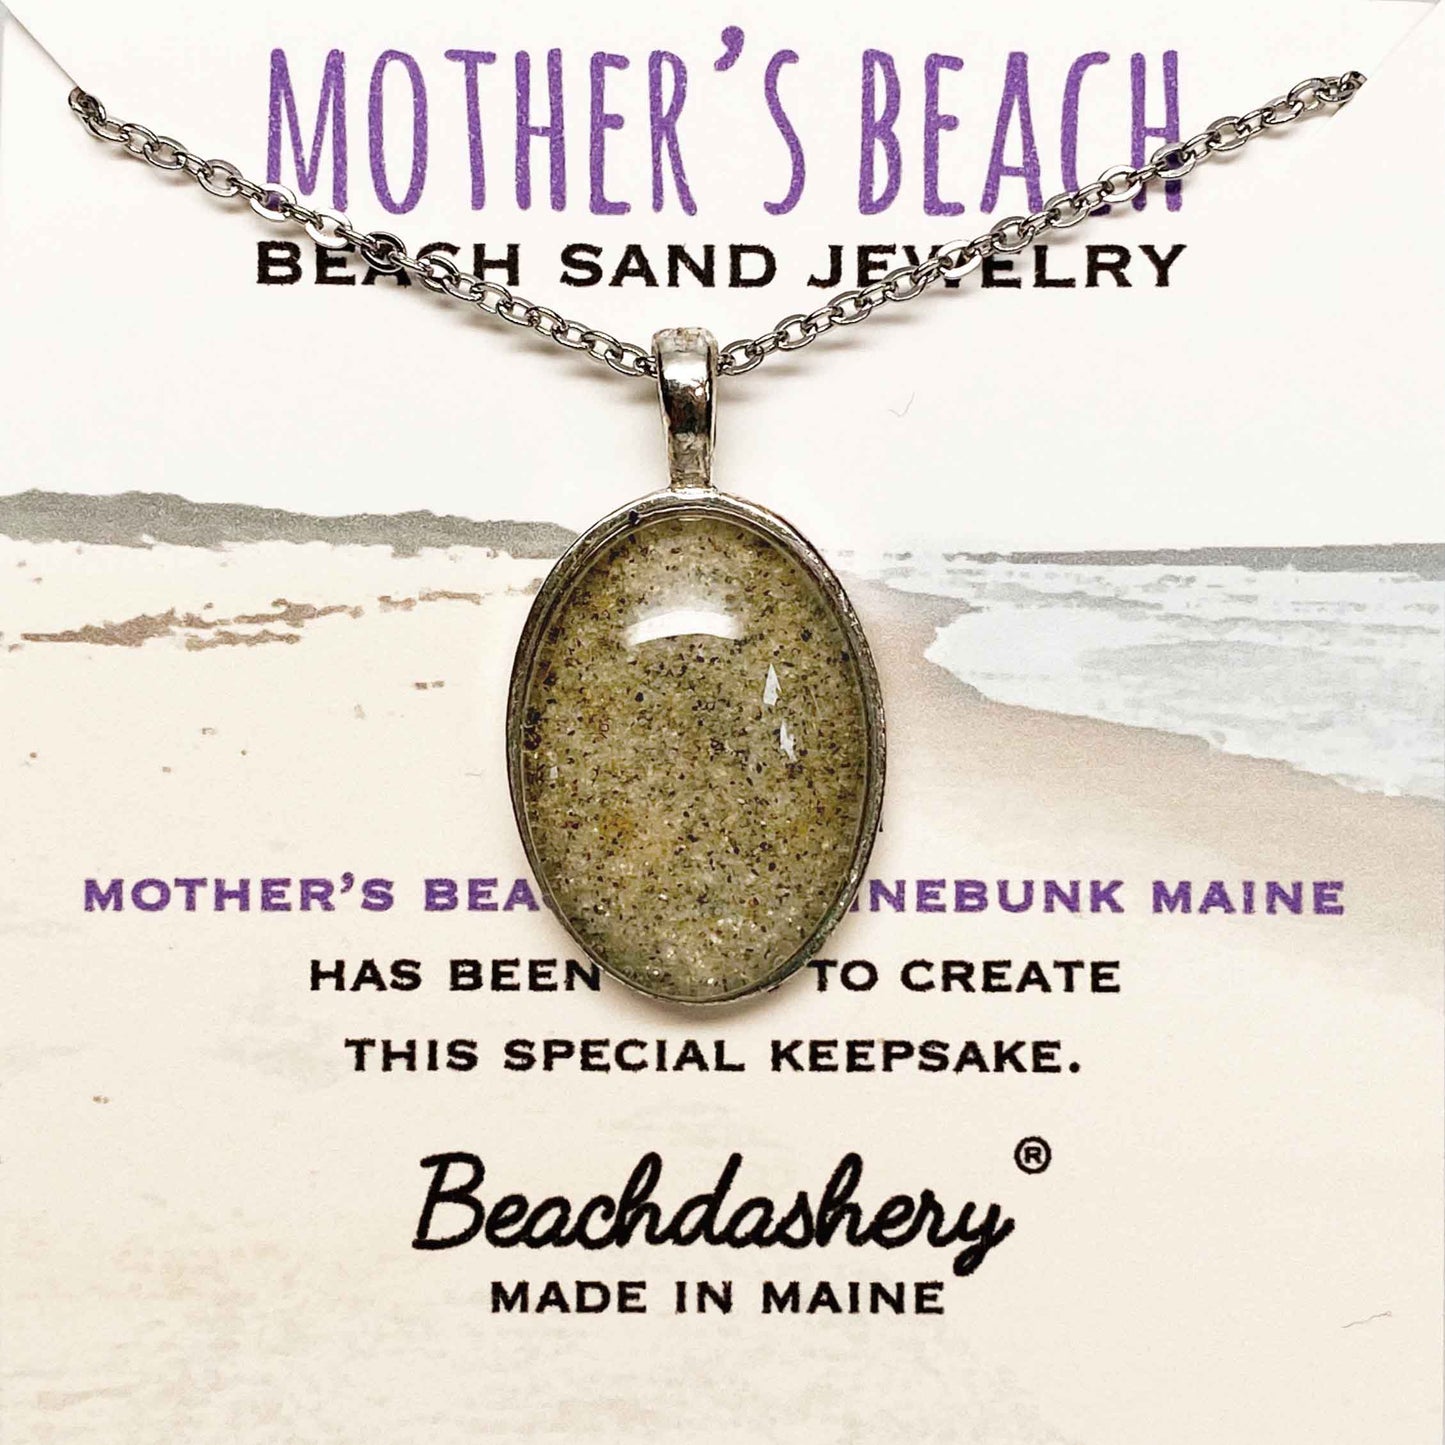 Mother's Beach Maine Sand Jewelry Beachdashery